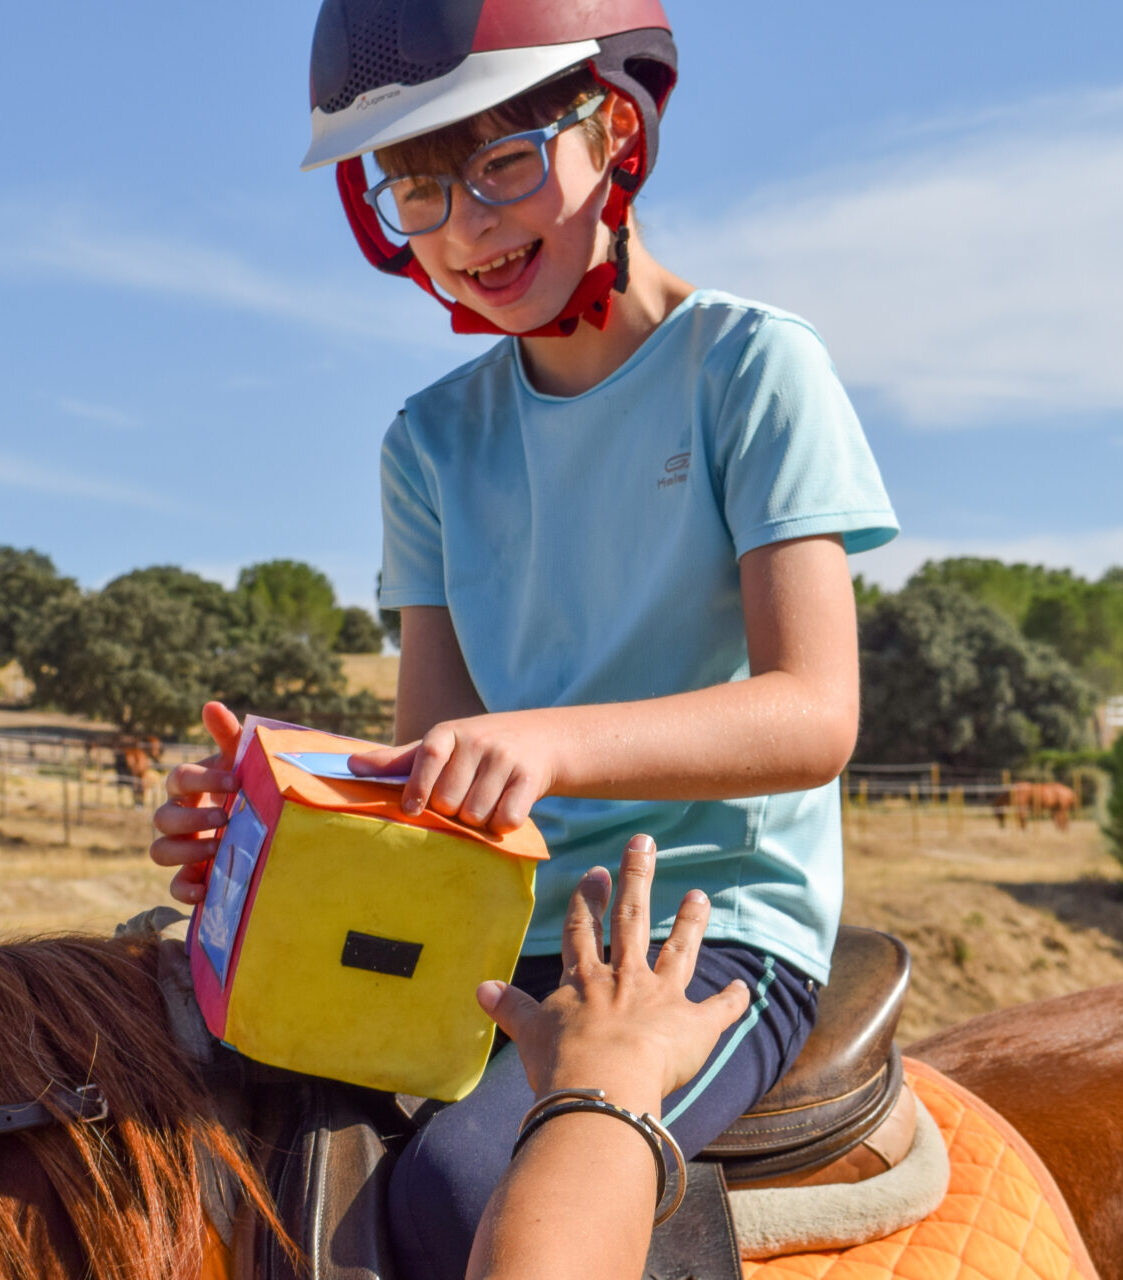 Fotografía de un niño montando a caballo durante una actividad